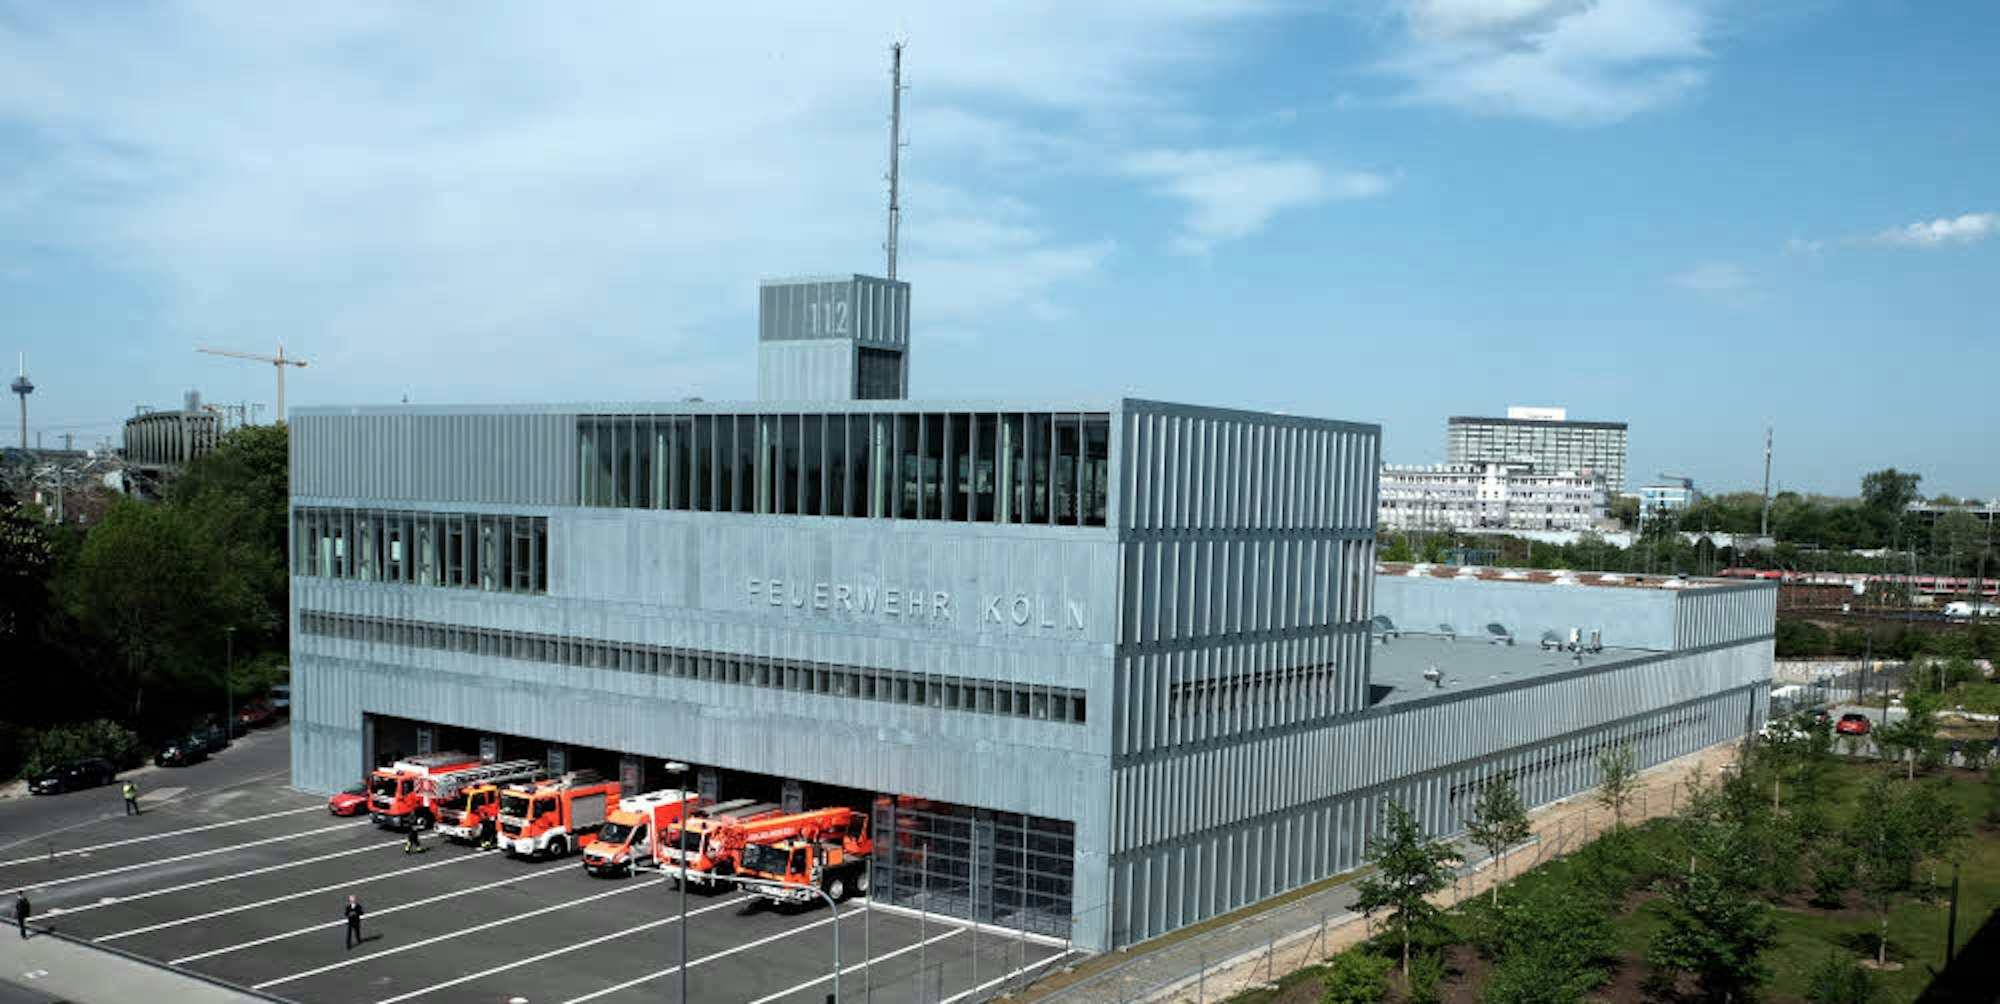 Die Fassade ist schon so gut wie fertig sein. Bis Ende 2019 soll das neue Feuerwehrzentrum komplett bezogen sein.